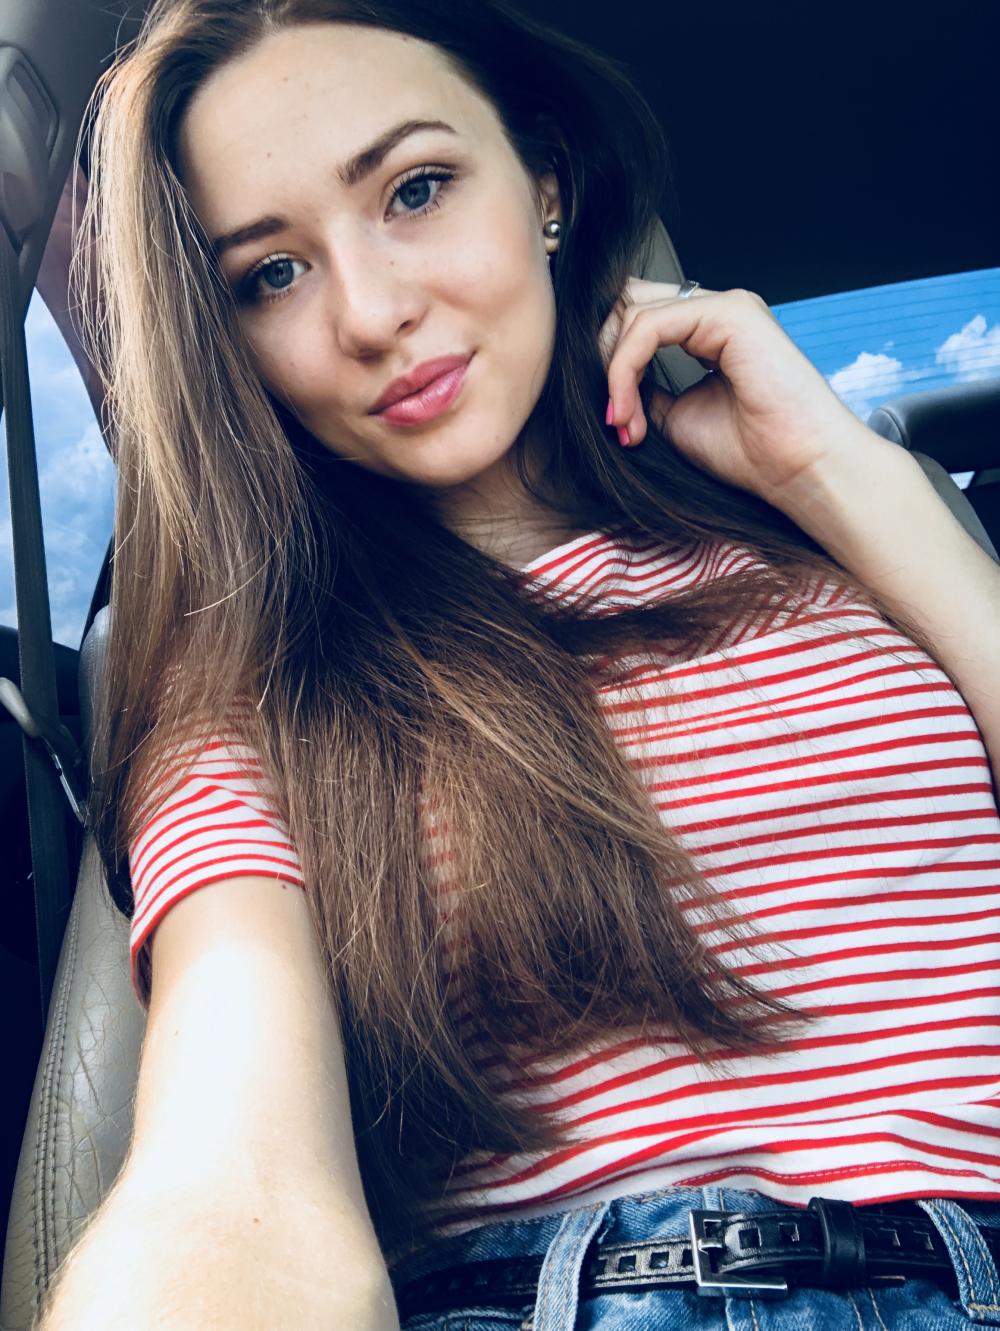 Виктория Овчаренко